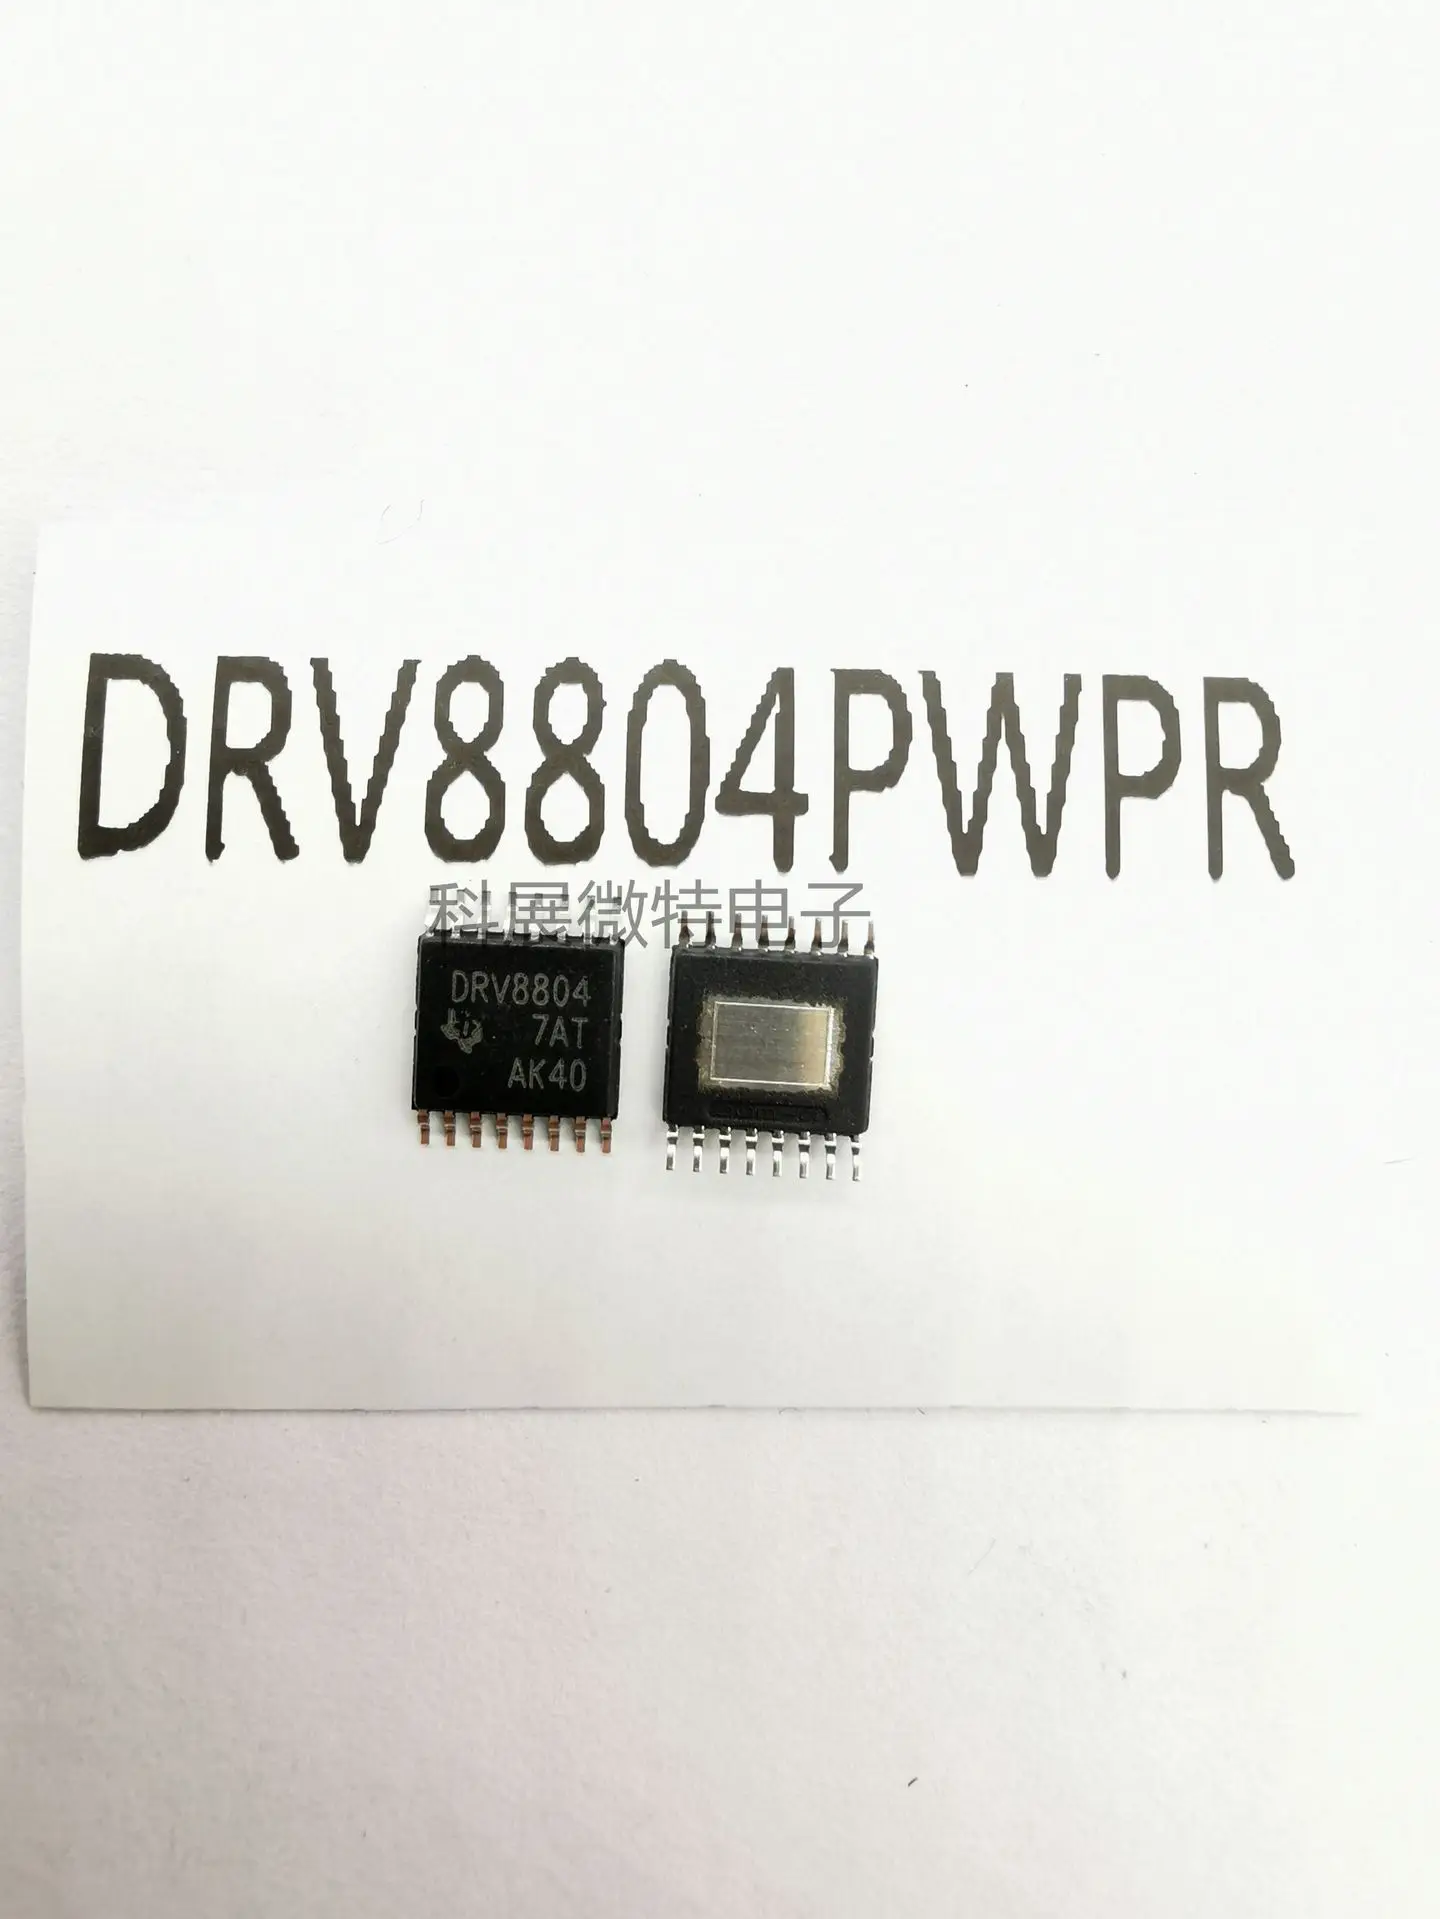 

Оригинальный Новый встроенный чип DRV8804PWPR DRV8804 TSSOP-16